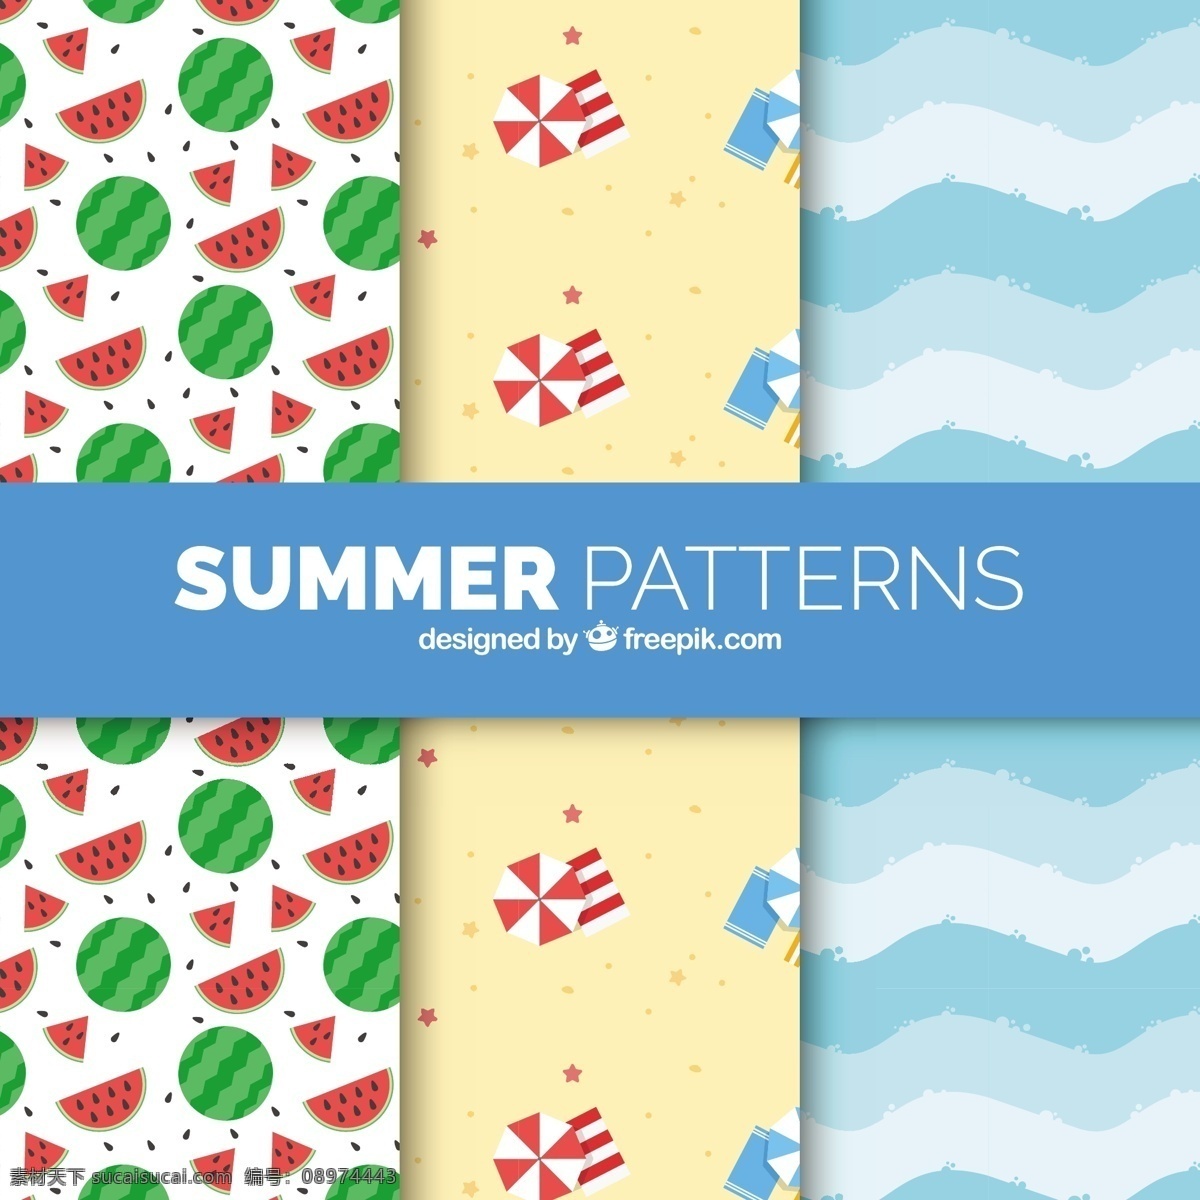 夏季 元素 装饰 图案 平面设计 背景 夏季元素 装饰图案 平面设计背景